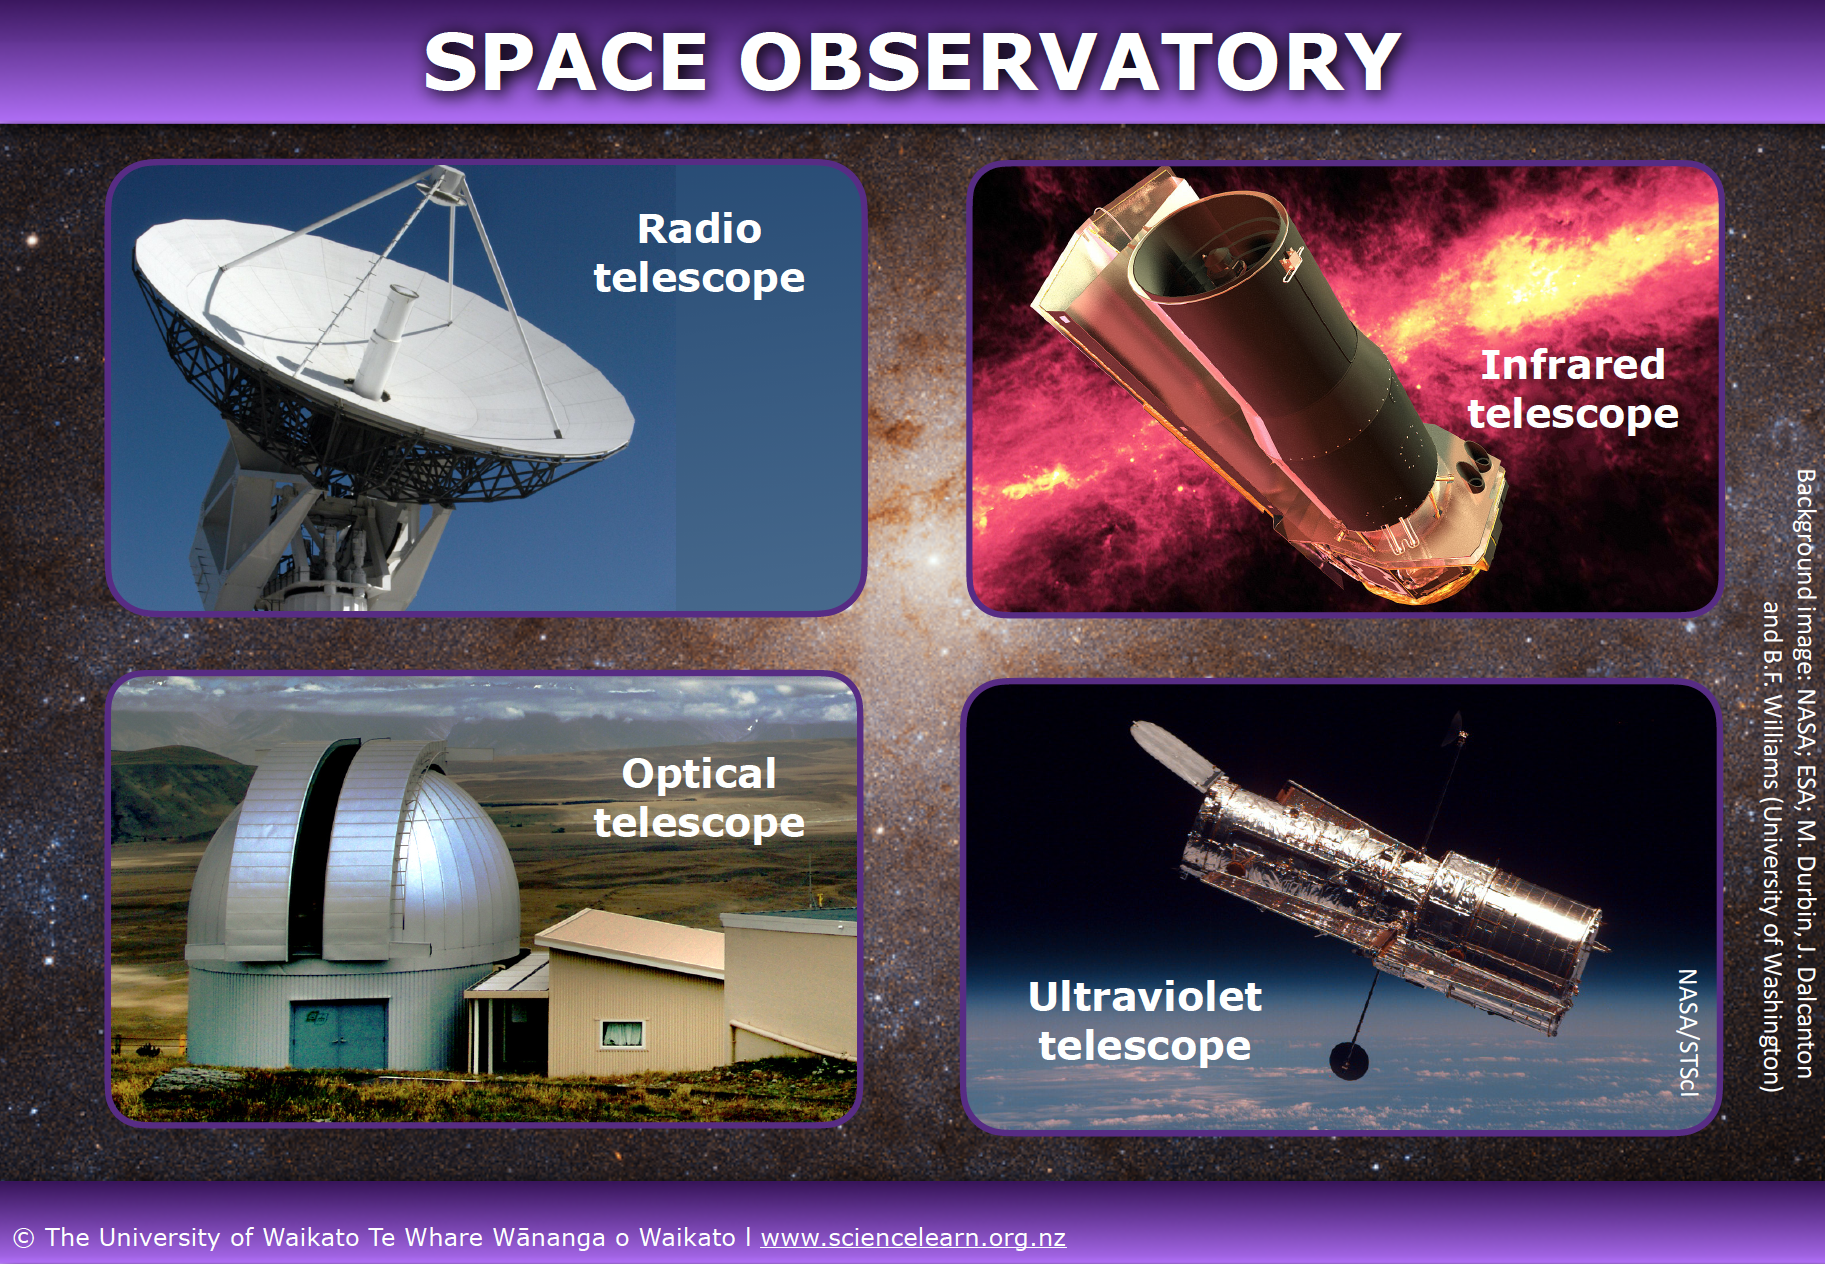 sigaar Hoop van gordijn Space observatory — Science Learning Hub